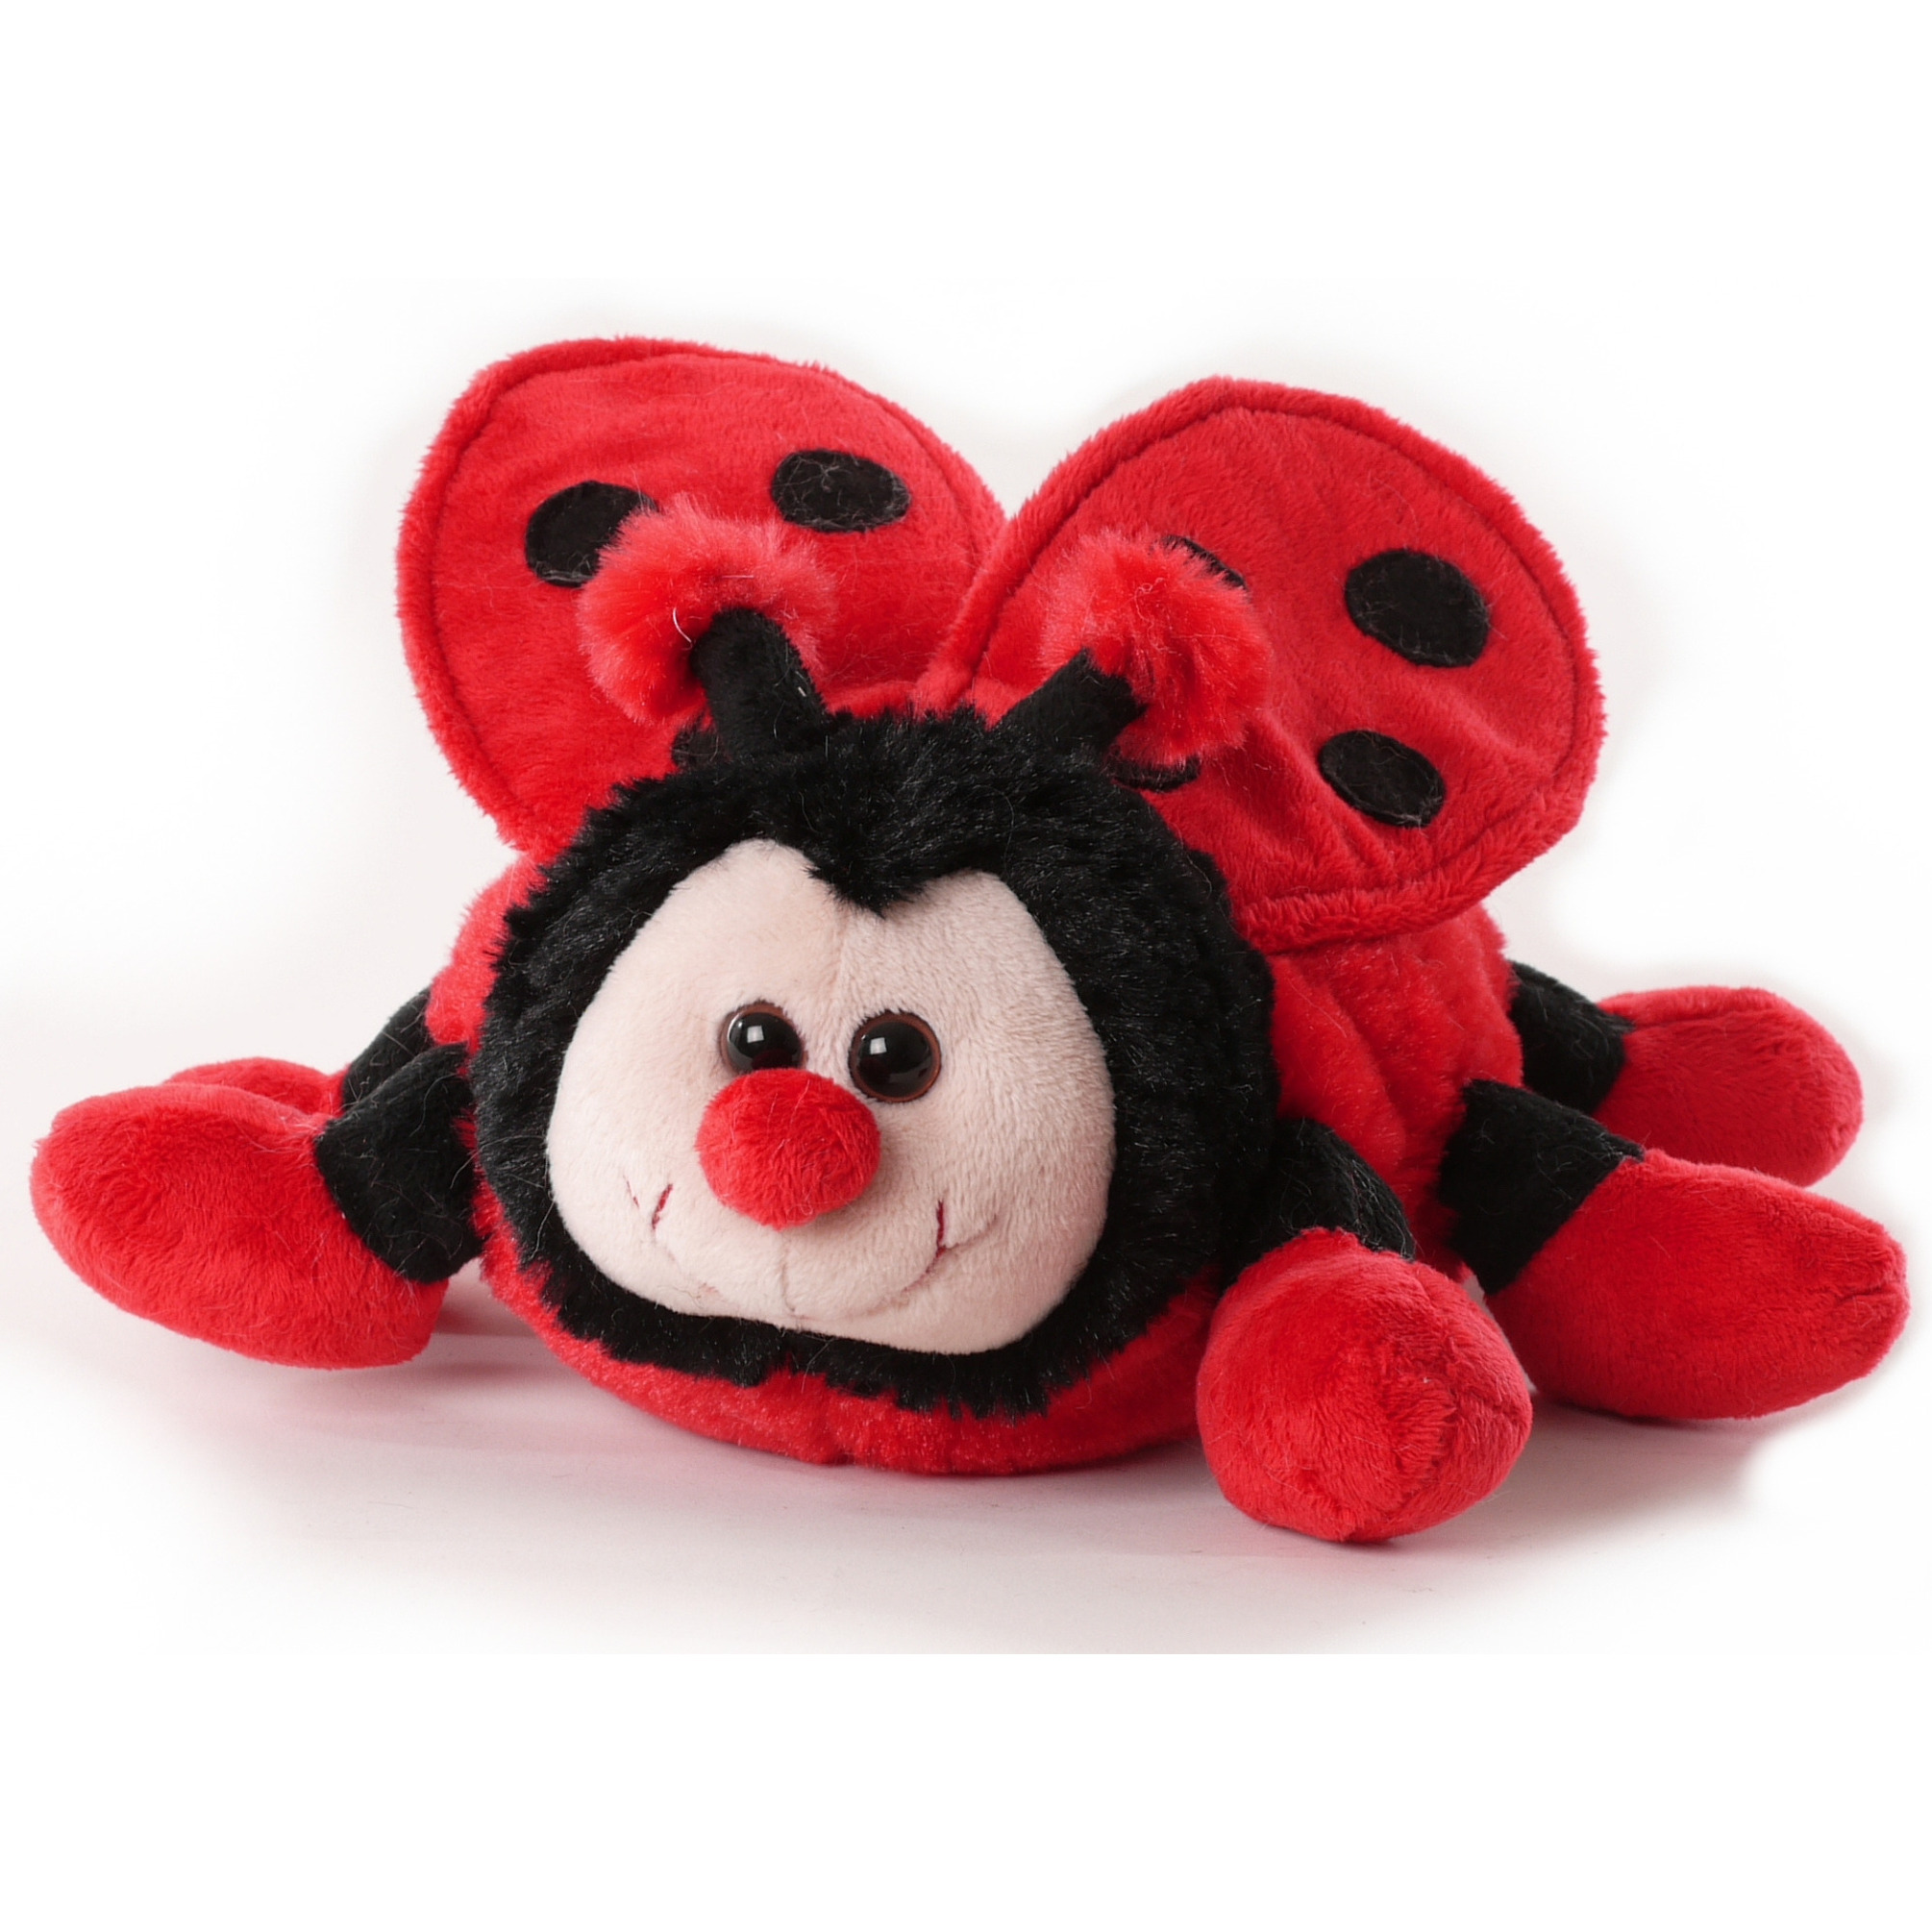 Inware pluche lieveheersbeestje knuffeldier - rood/zwart - staand - 20 cm -